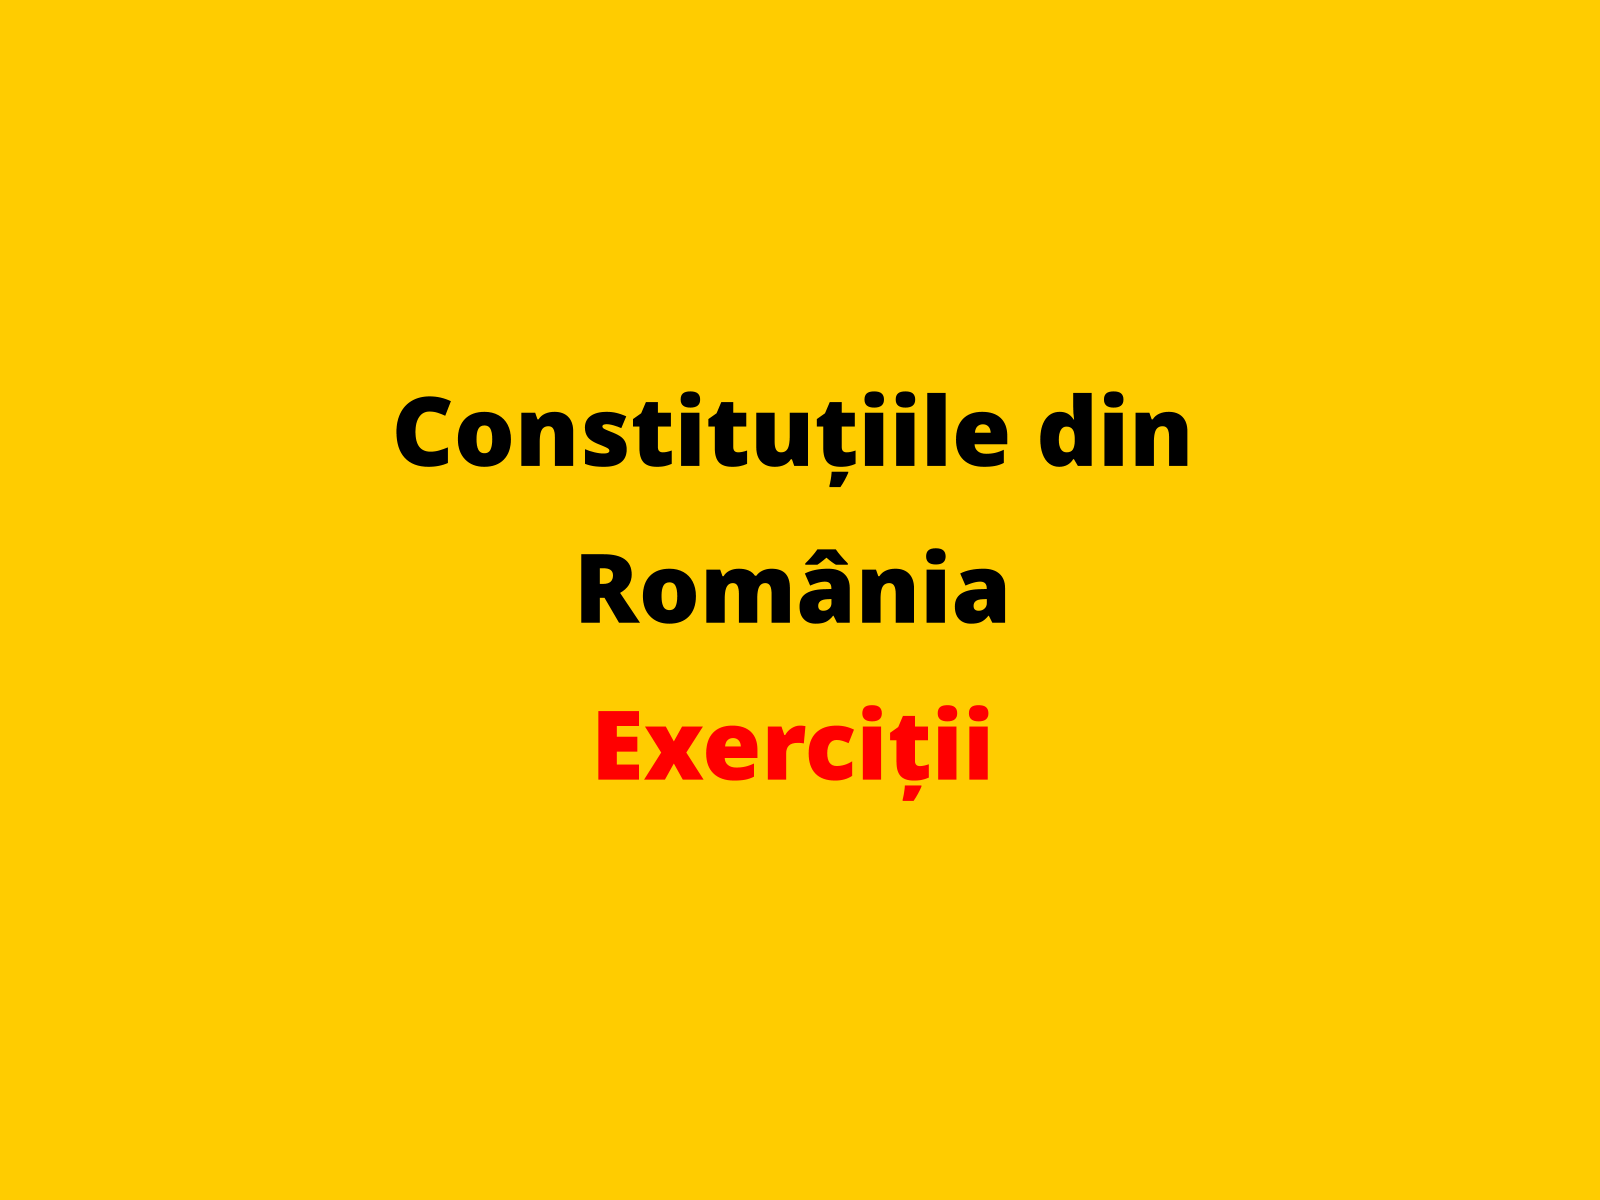 Menționați o prevedere a legii fundamentale adoptată în statul român în 1866